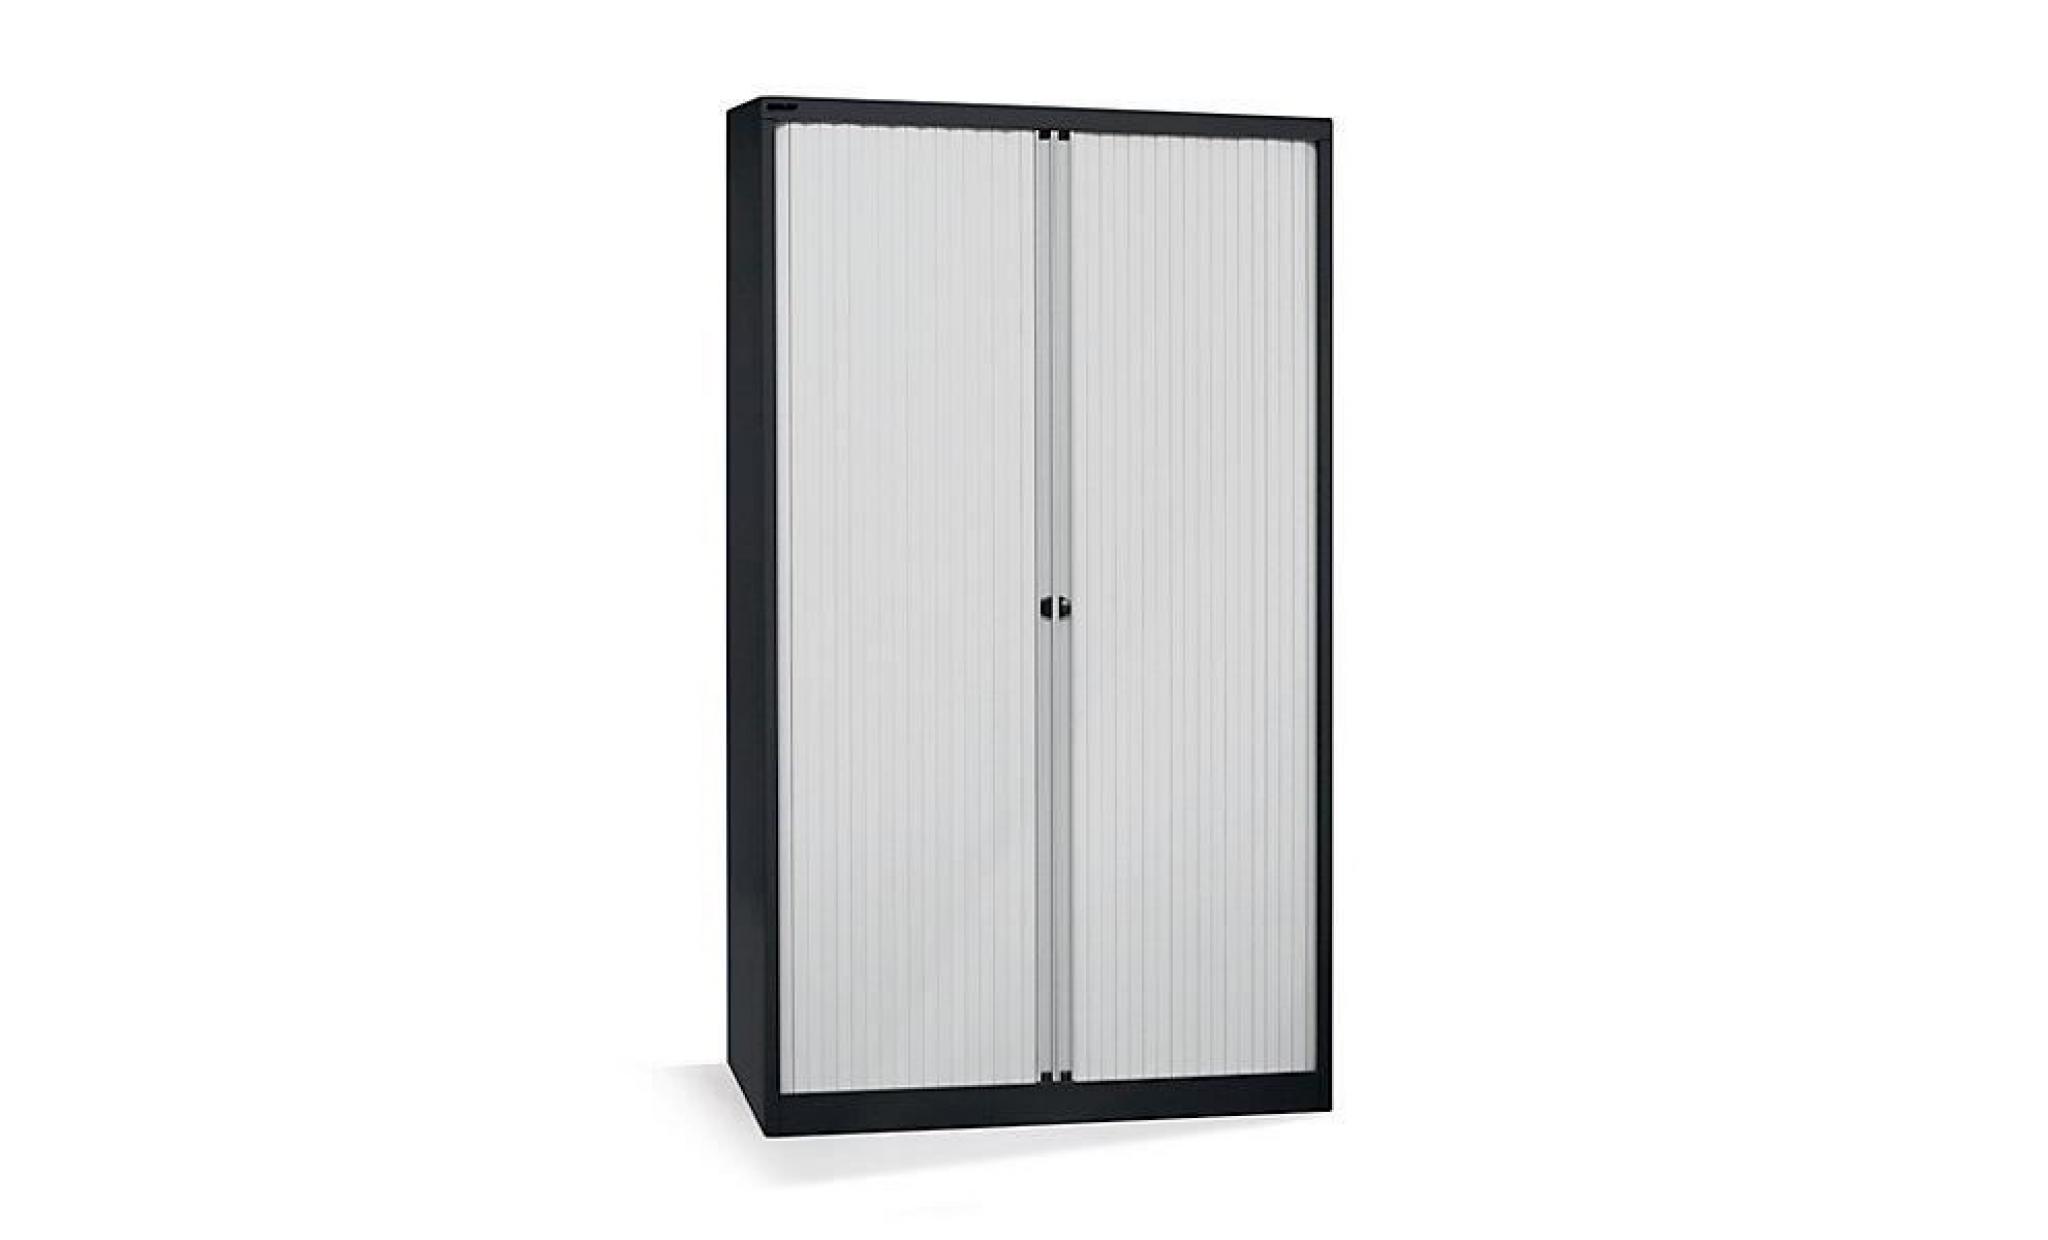 bisley armoire à rideaux   horizontal, noir profond / gris clair h x l 1980 x 1000 mm, 4 tablettes   armoire basse armoire de bureau